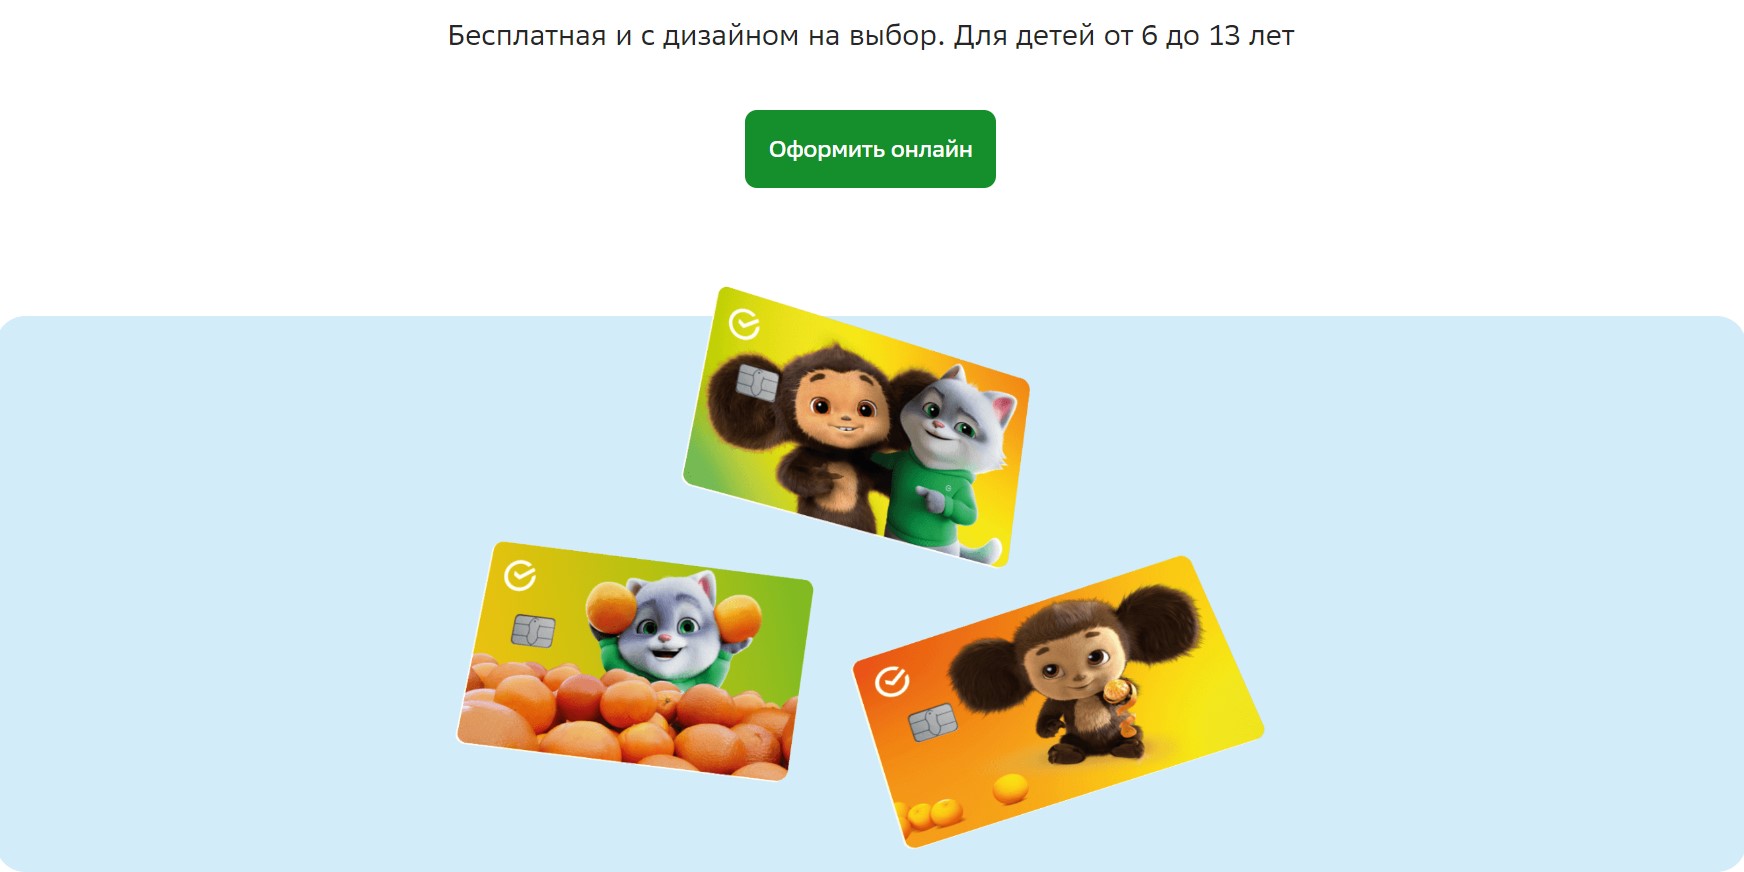 Банковские карты для детей: «Детская СберКарта» от Сбербанка